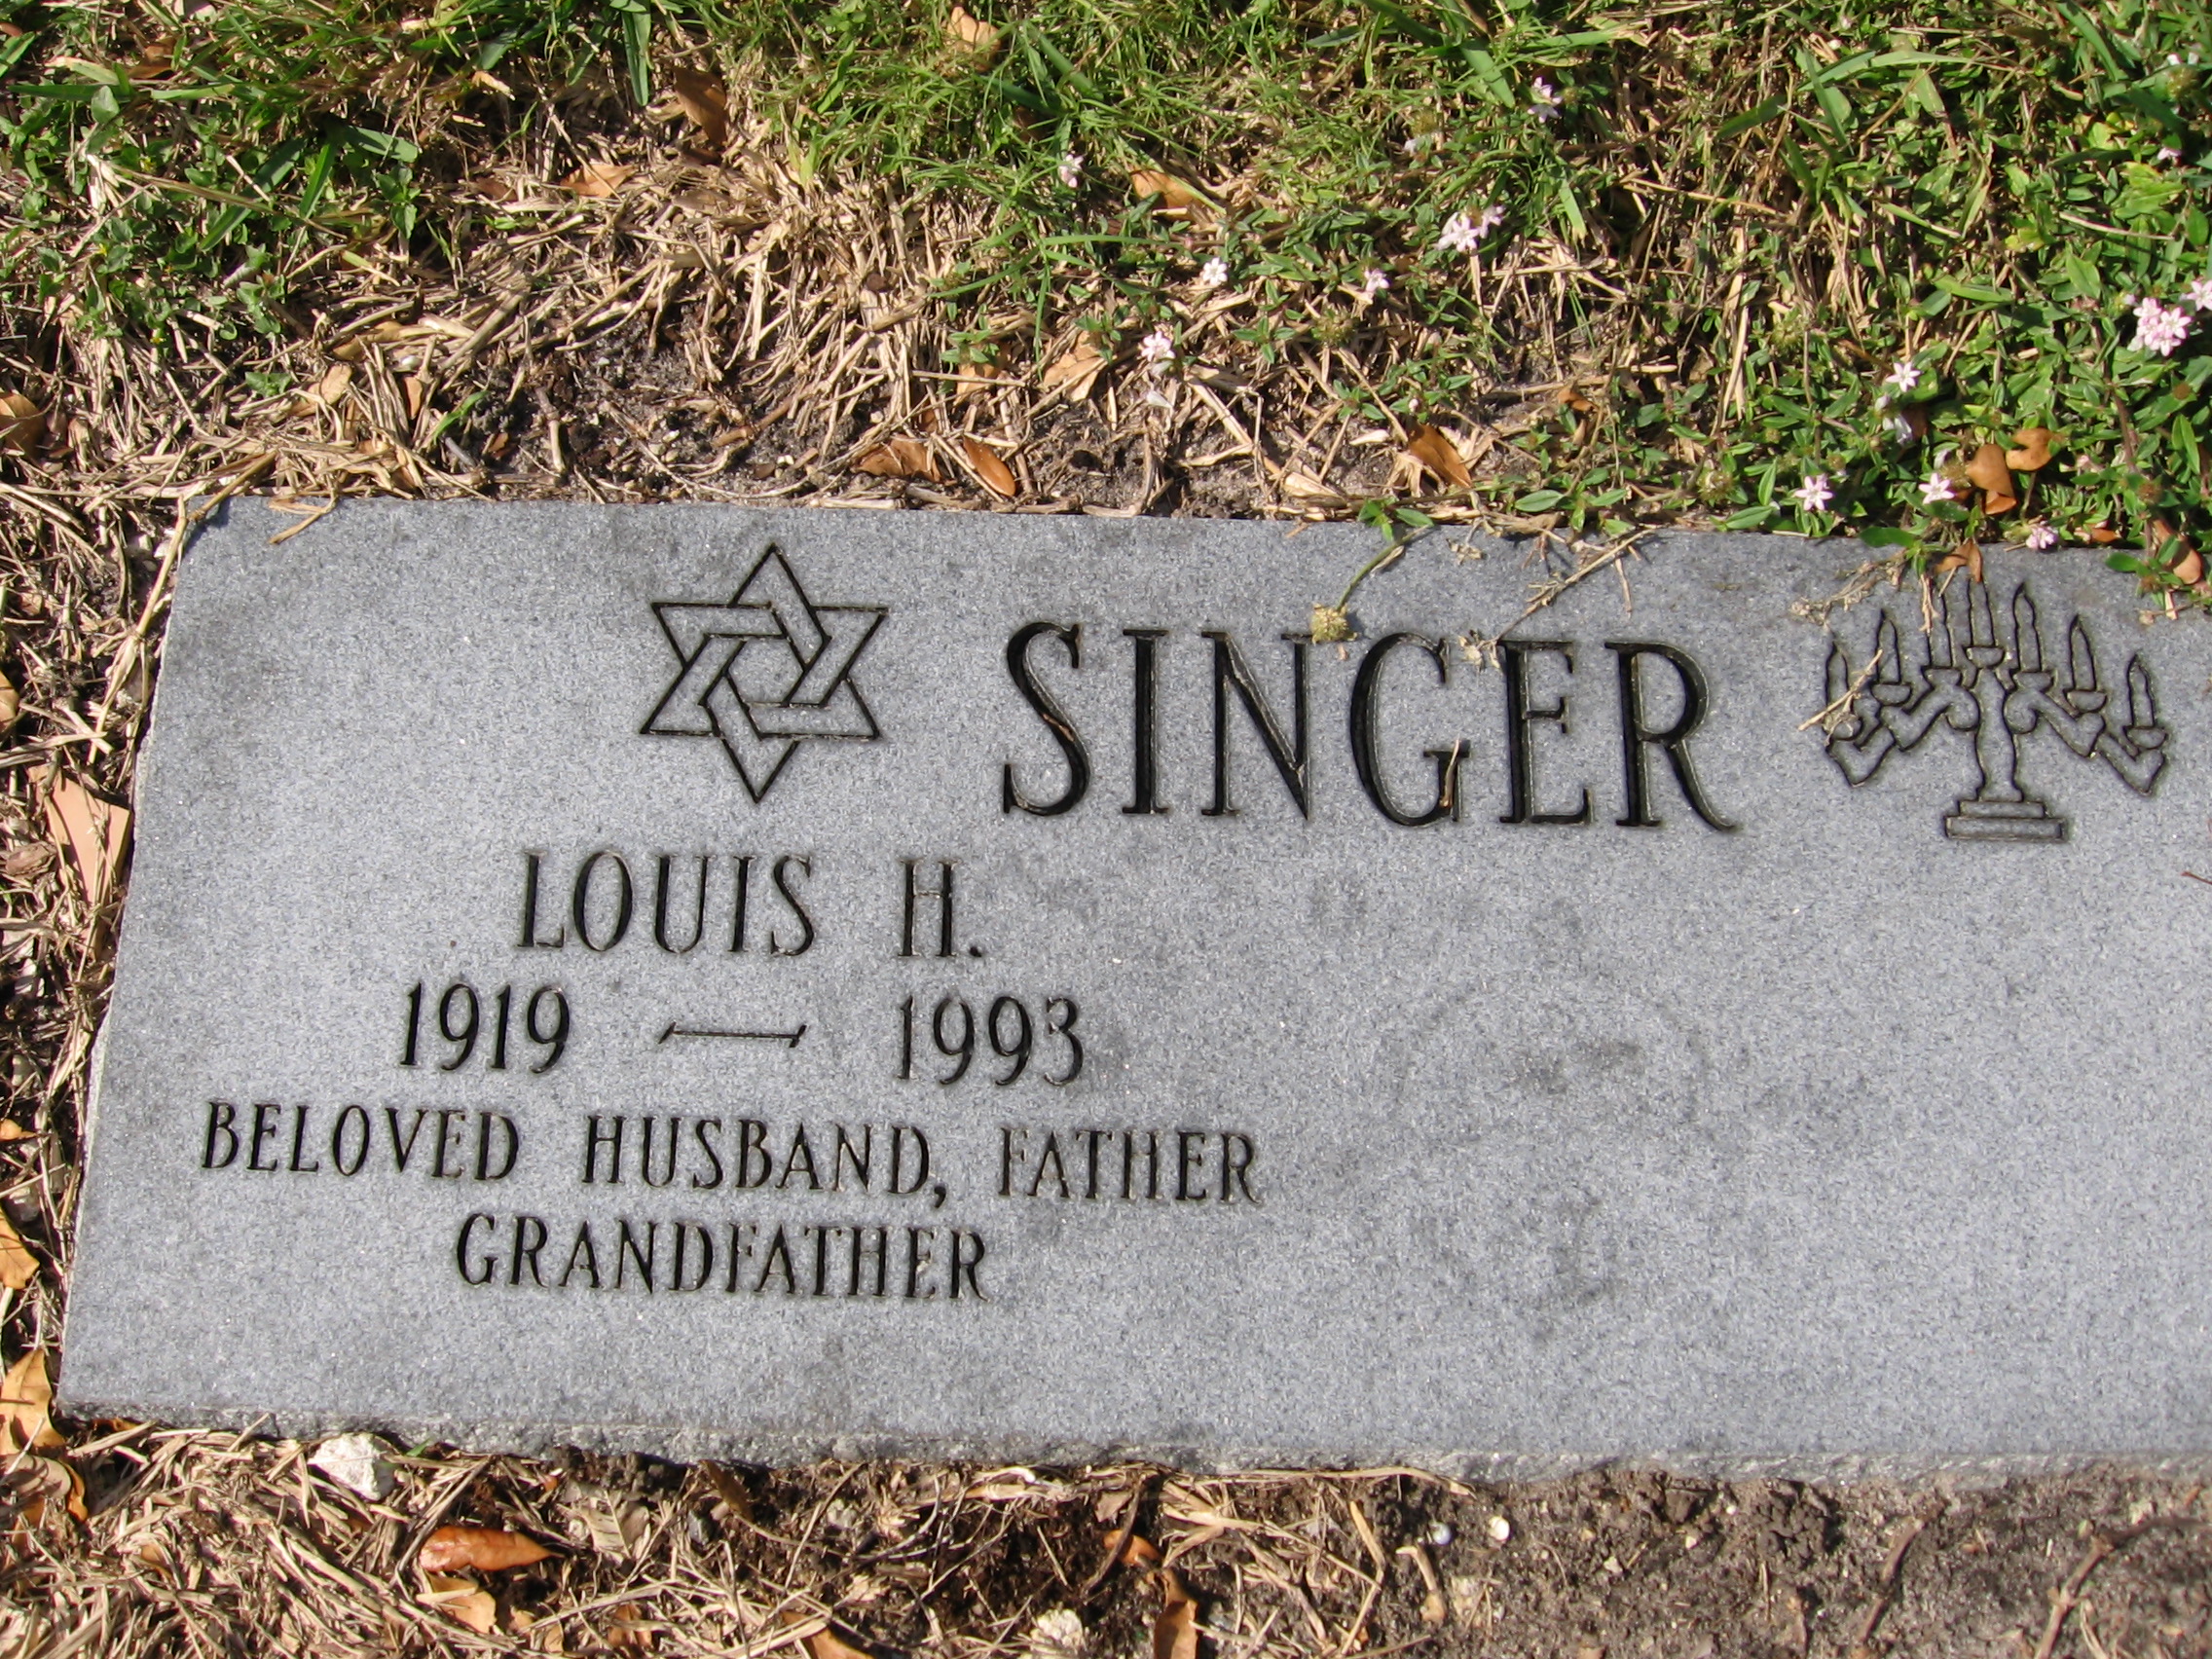 Louis H Singer